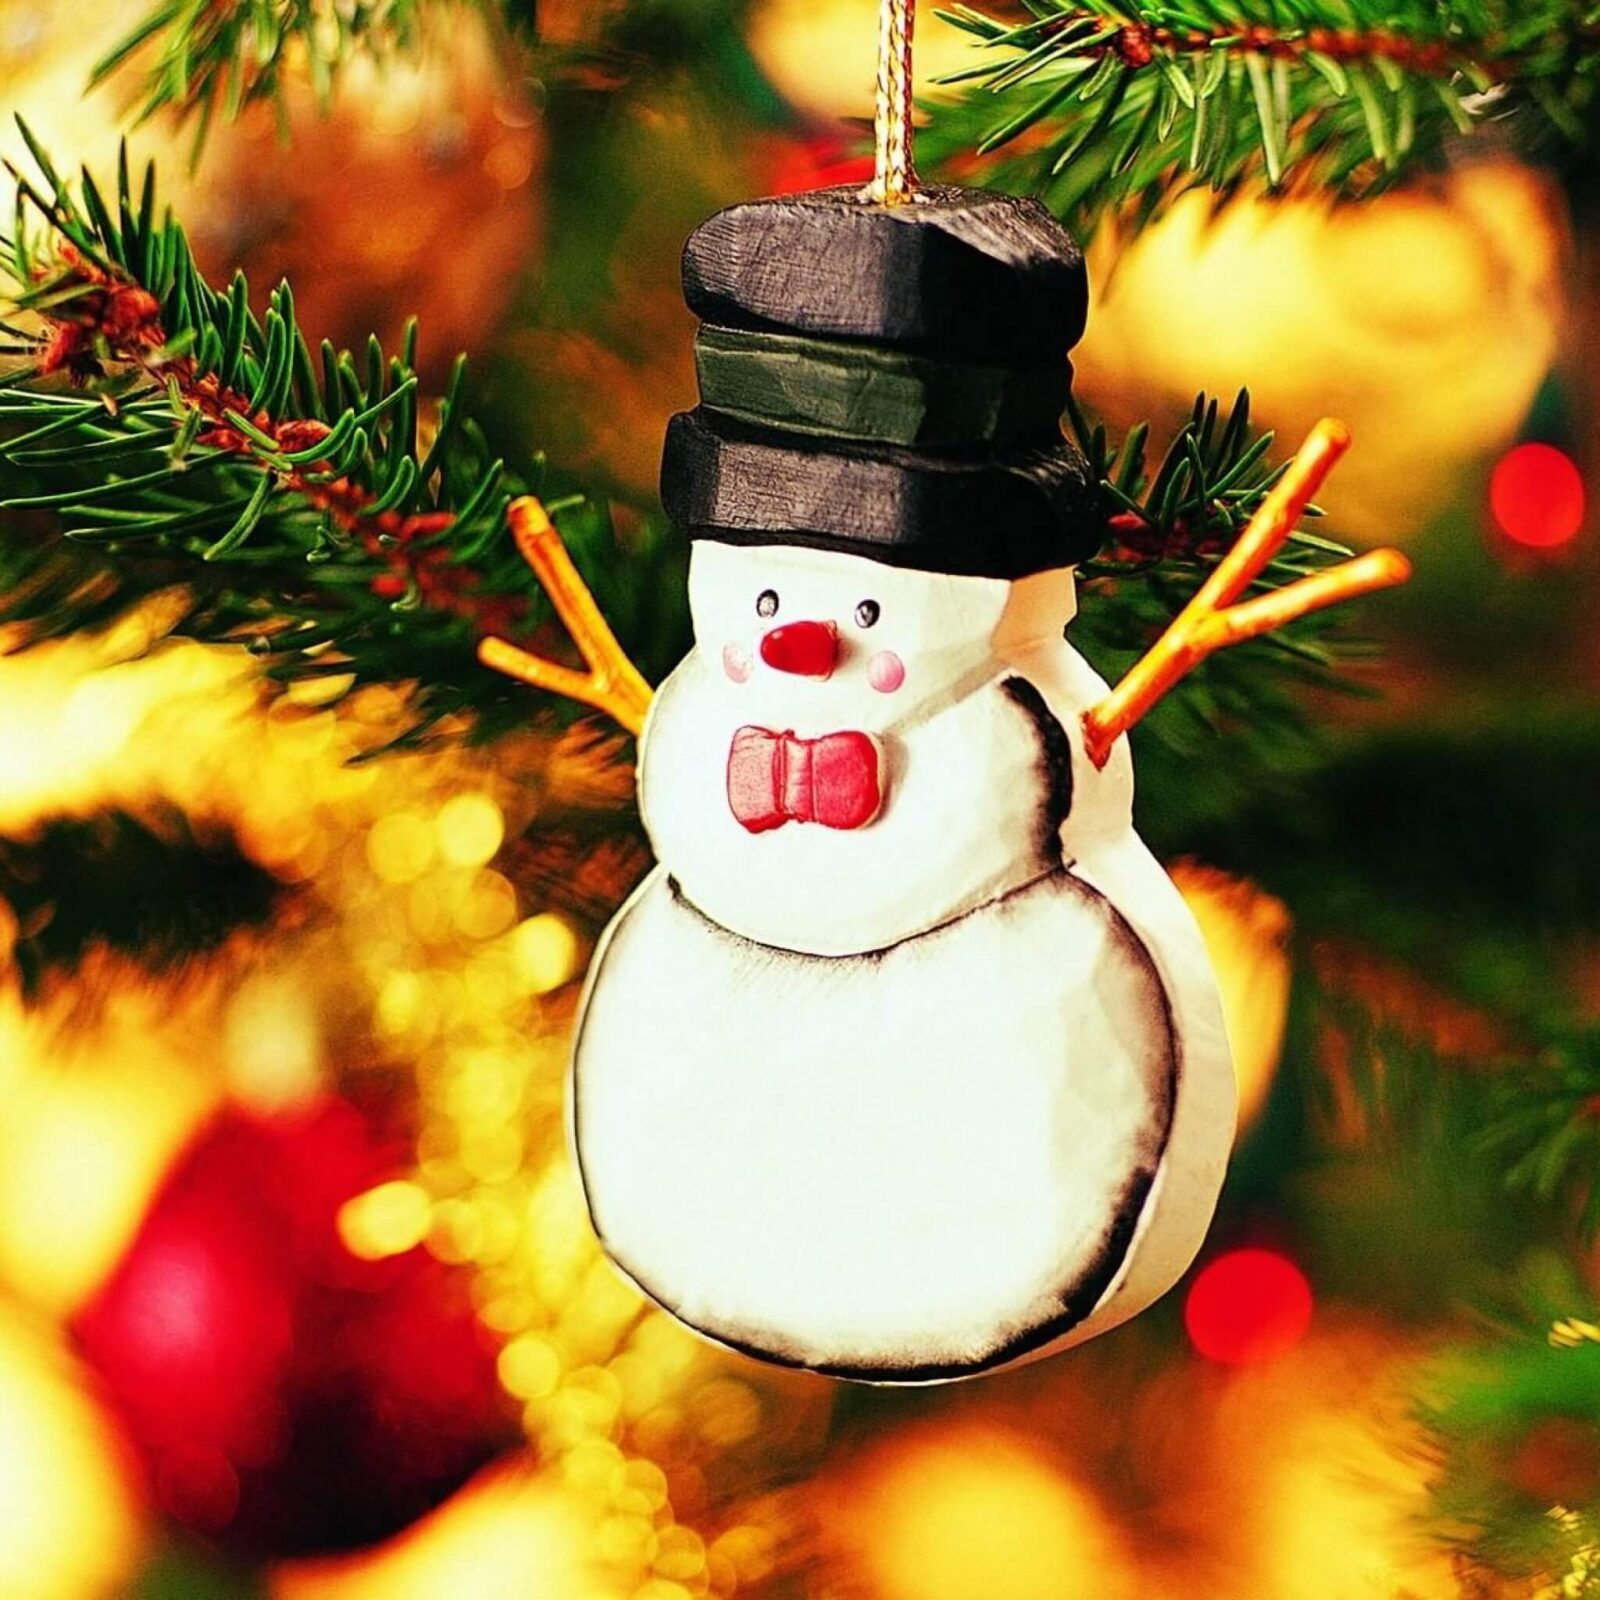 Le fond d’écran du jour spécial Noël : petit bonhomme de neige pour sapin Fonds d'écrans